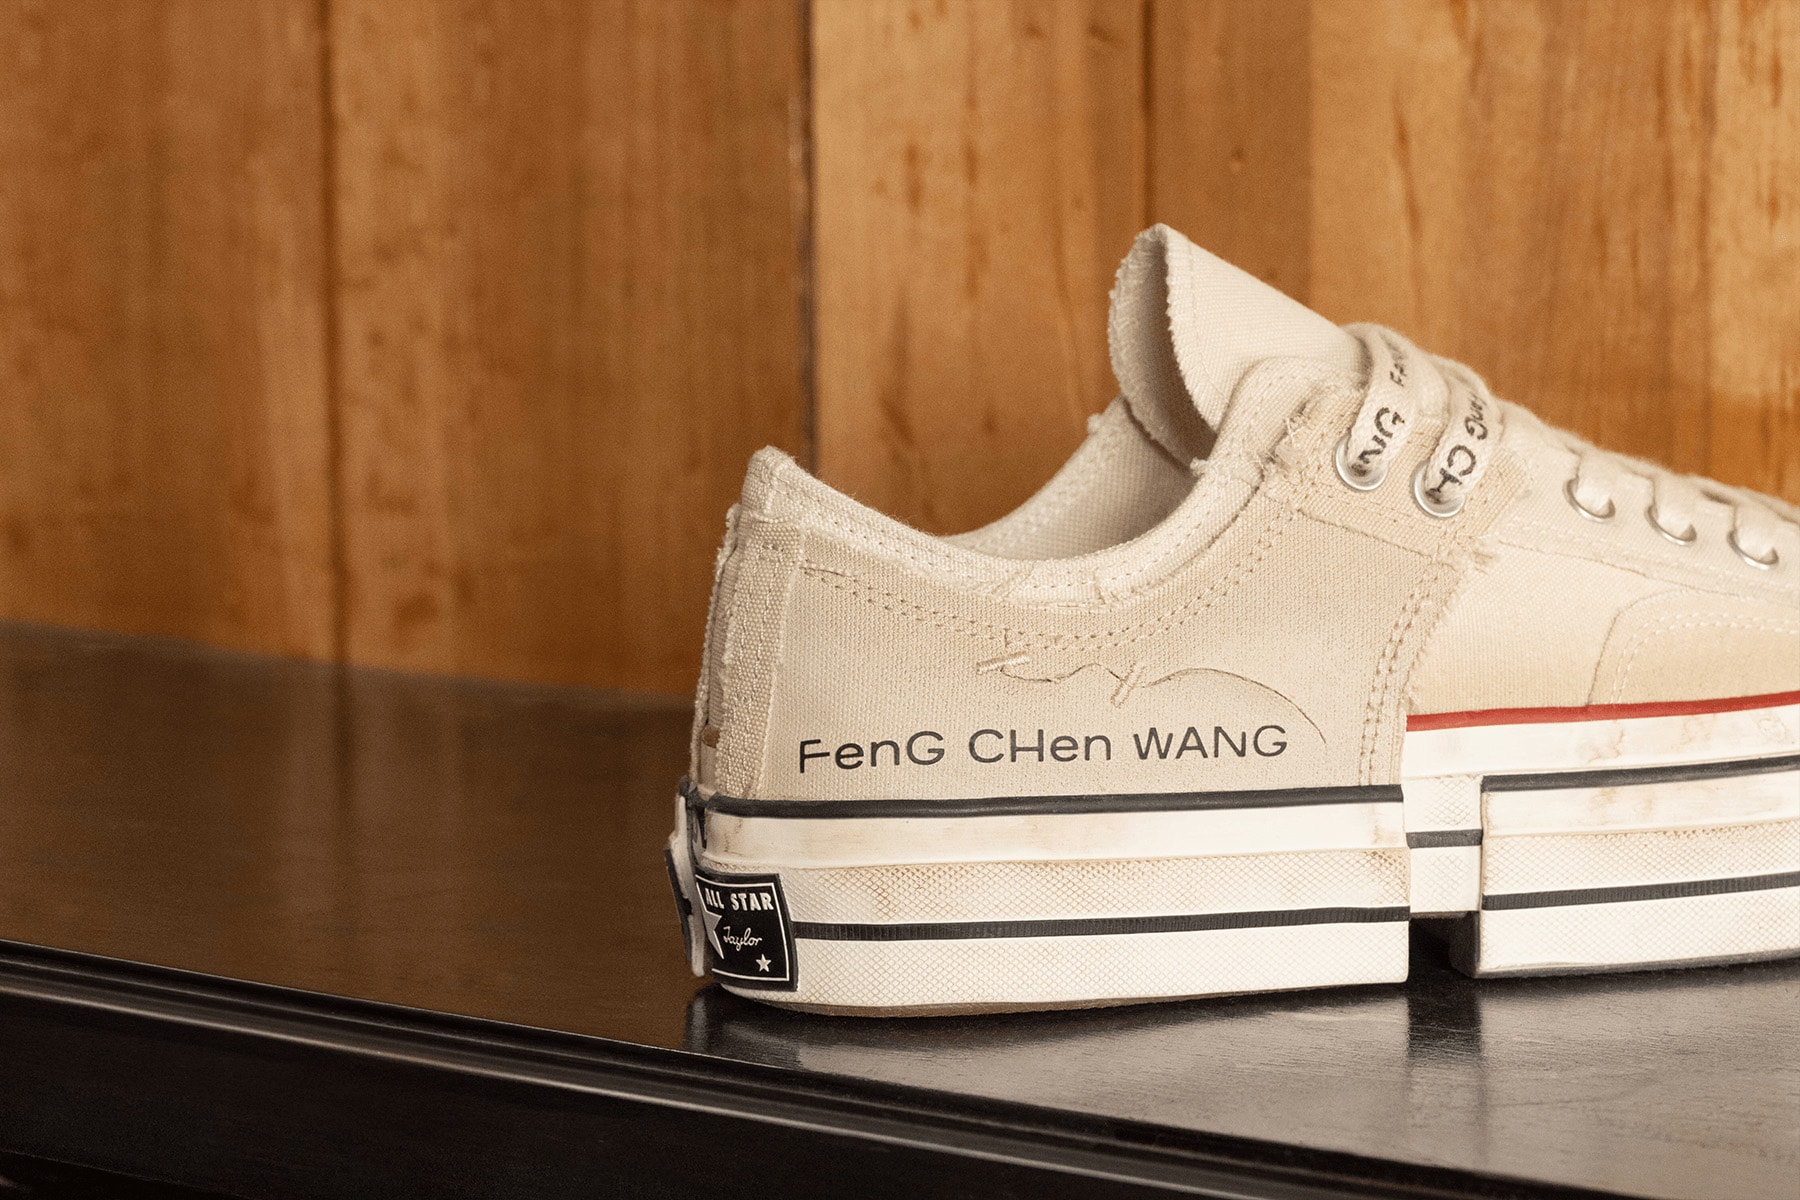 Converse x Feng Chen Wang 2-in-1 Chuck 70 最新联名低筒鞋款登場